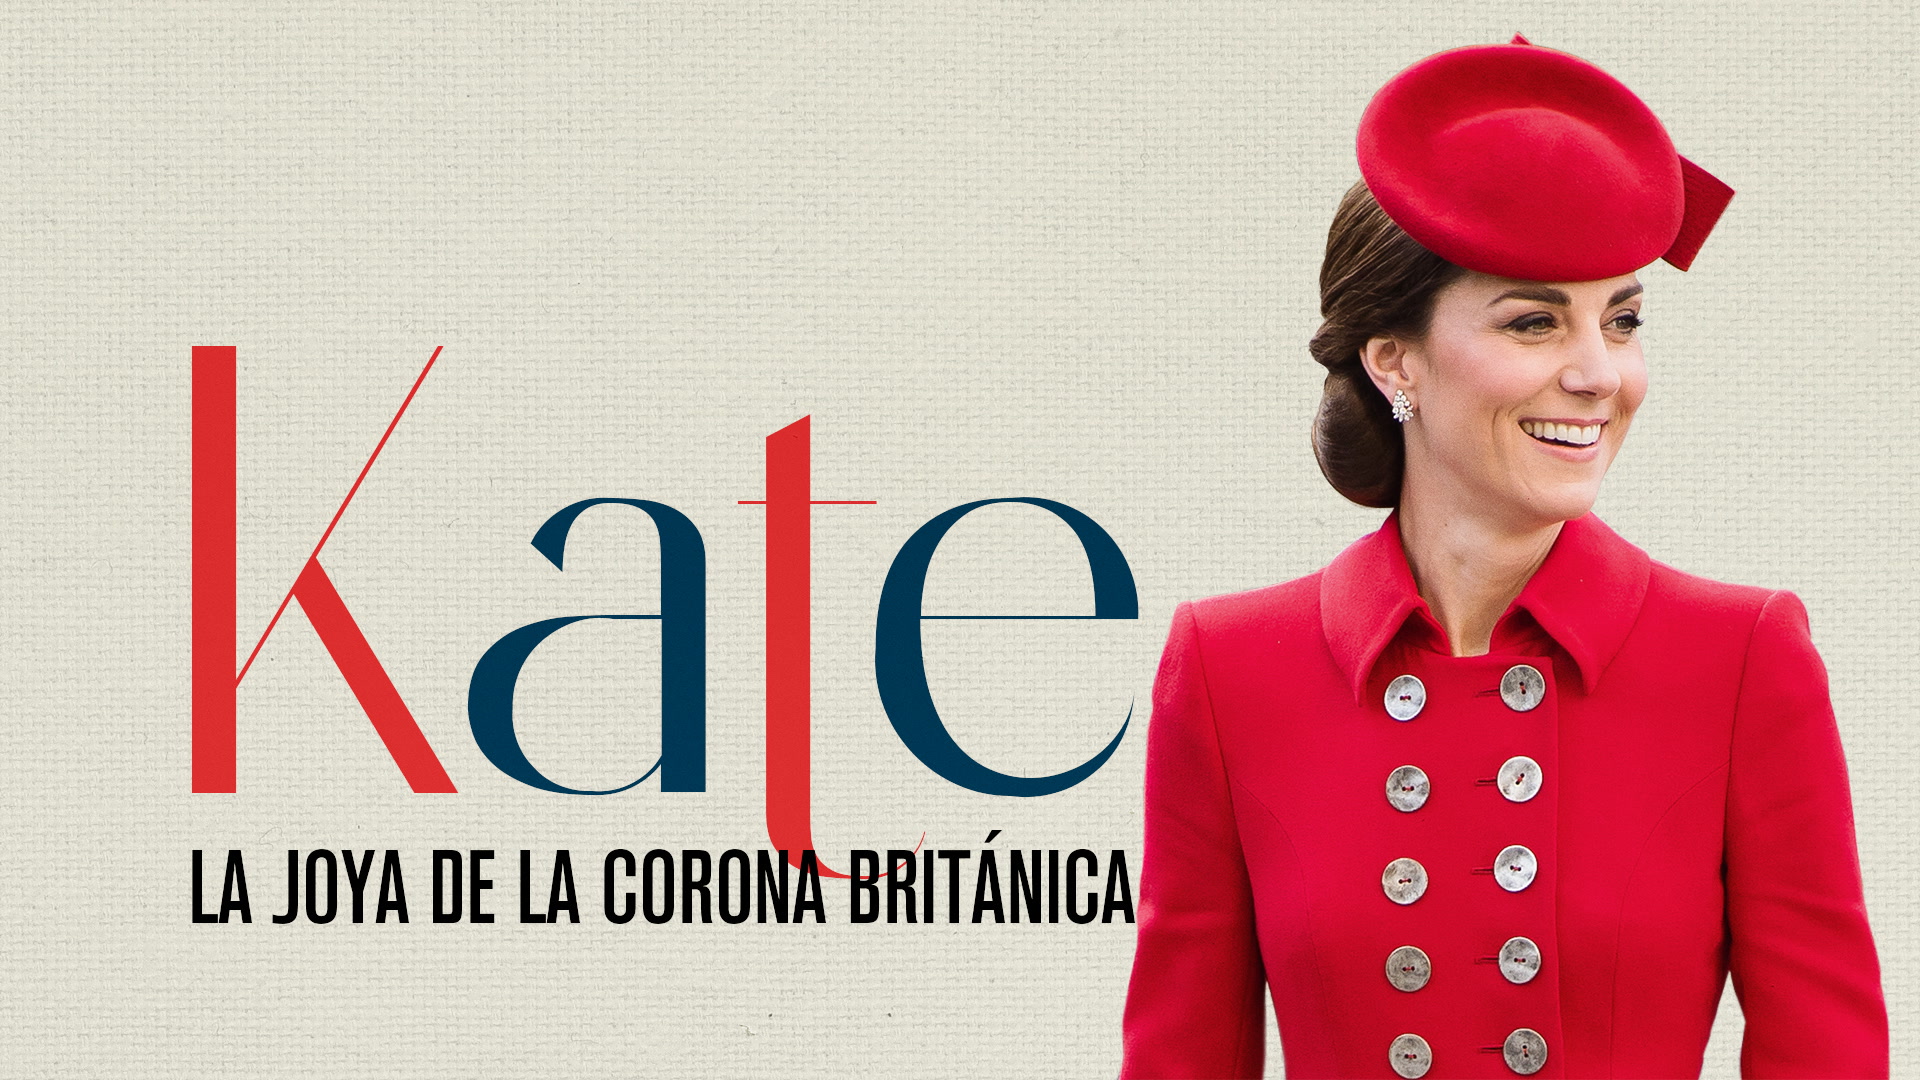 Kate, la joya de la corona británica